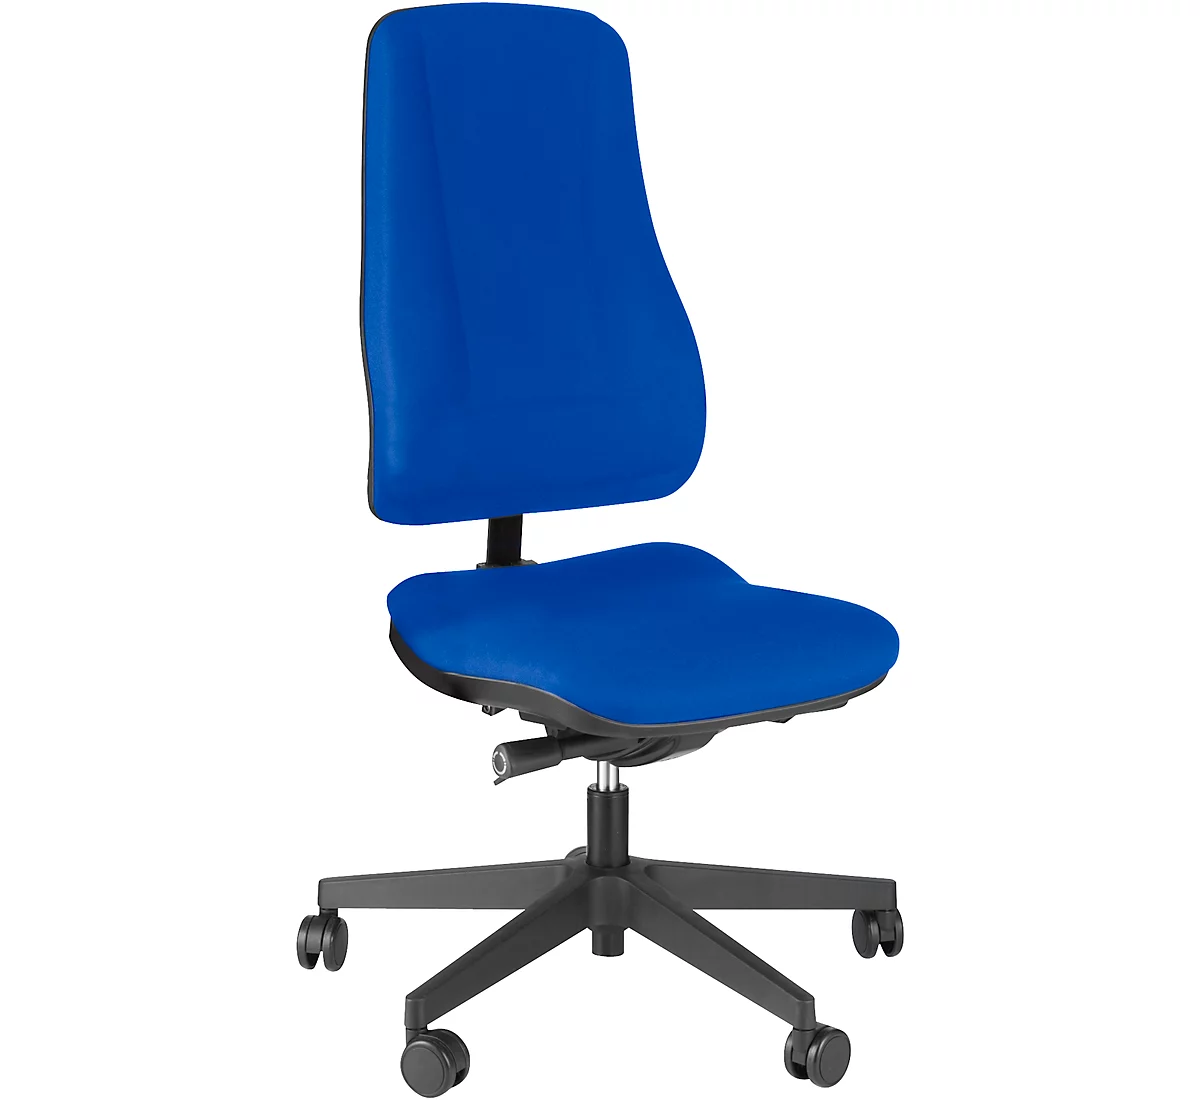 Prosedia Bürostuhl LEANOS V ERGO, Synchronmechanik, ohne Armlehnen, hohe Rückenlehne, blau/schwarz